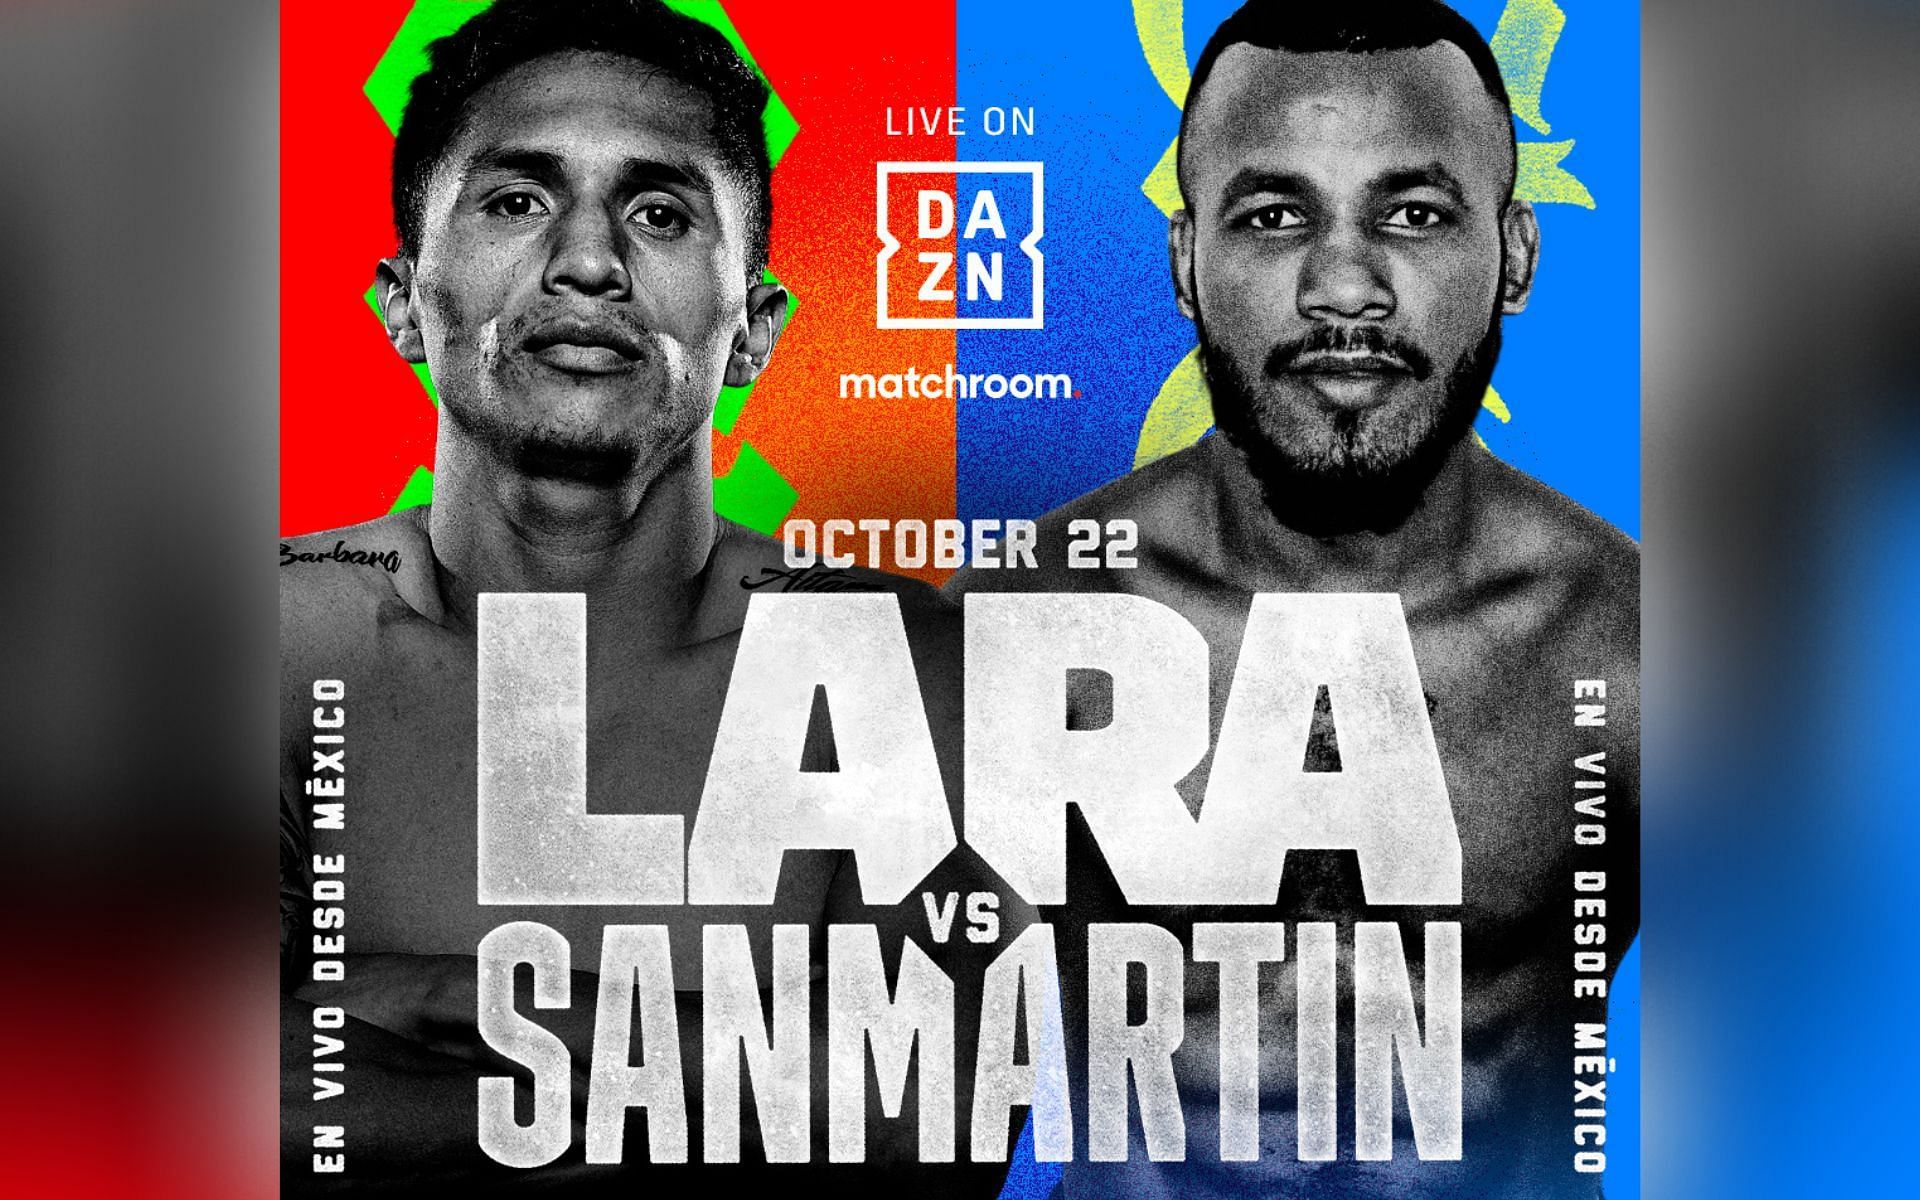 Lara vs. Sanmartin poster [Image via @MatchroomBoxing on Twitter]